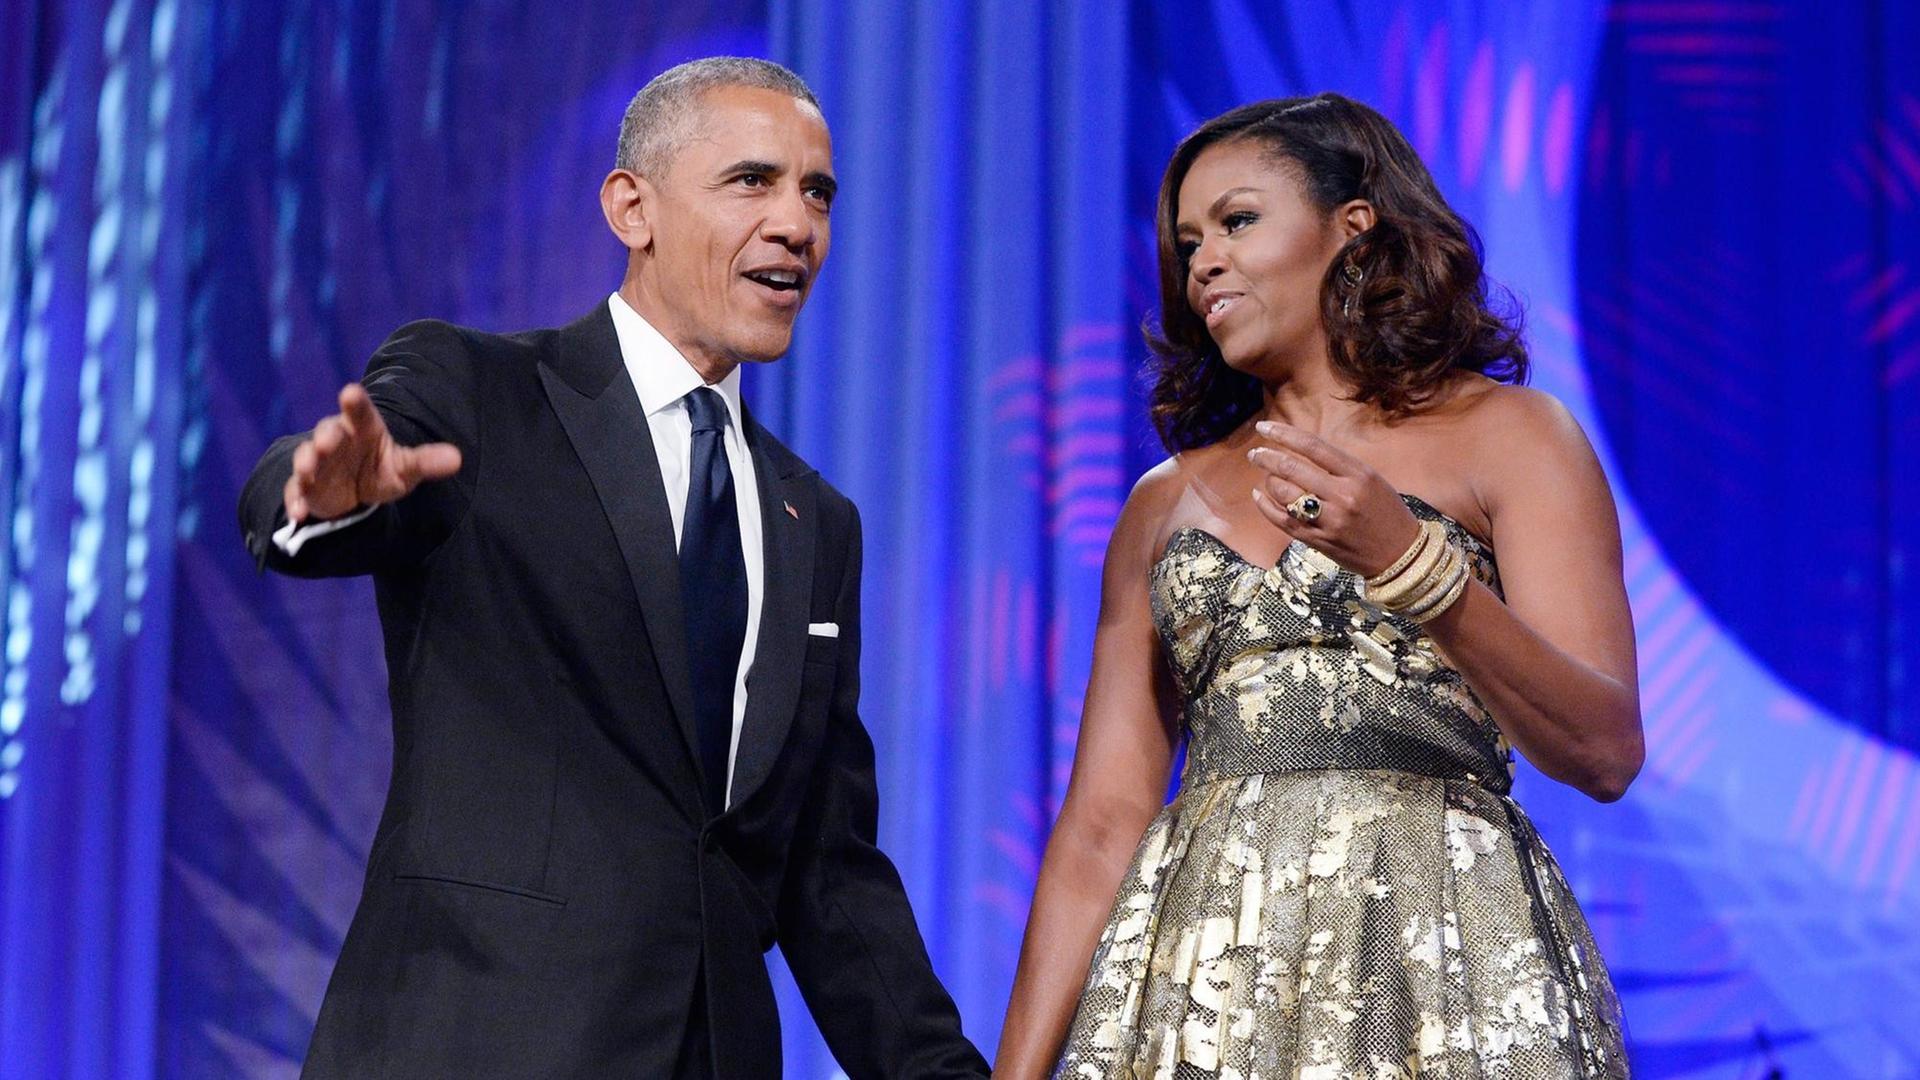 Das Bild zeigt den ehemaligen US-Präsidenten Barack Obama und seine Frau Michelle am 17.09.2016 bei einer Veranstaltung in Washington, DC, USA.